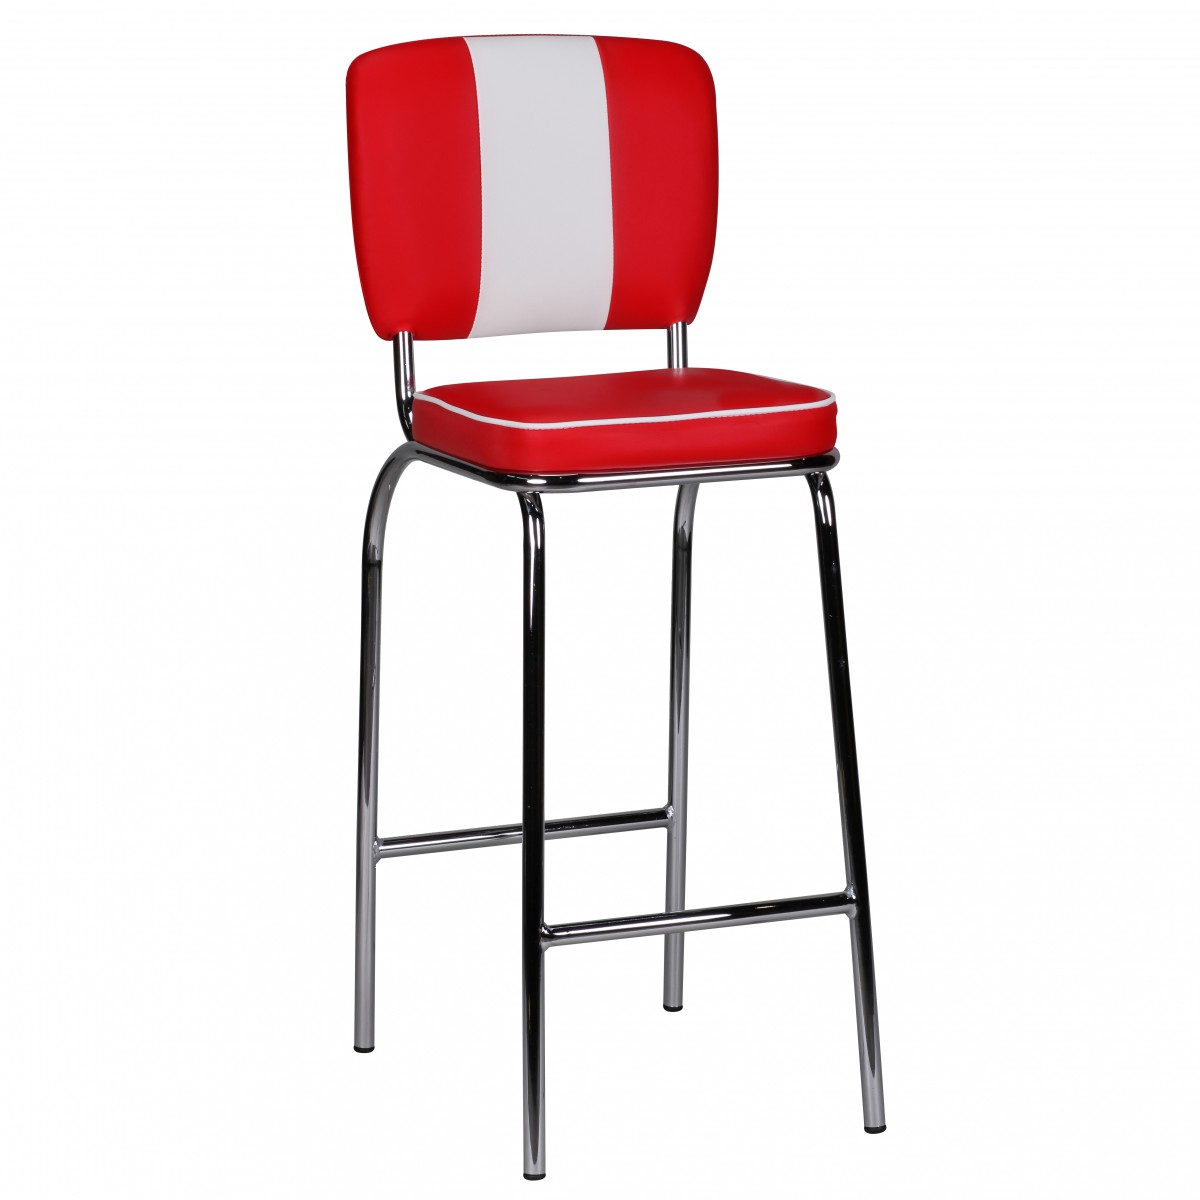 [A09685] Chaise de bar American Diner années 50 rétro rouge blanc